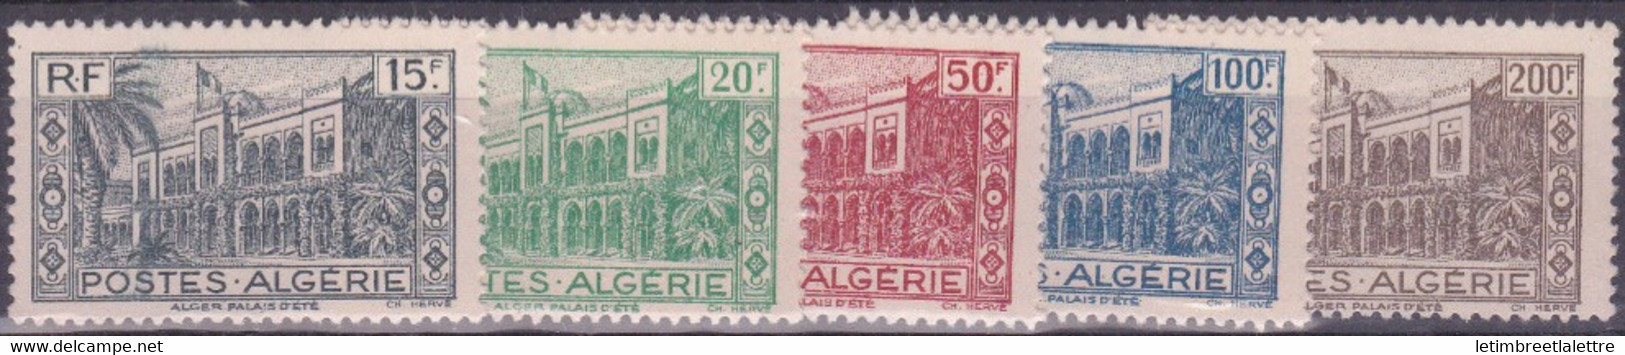 Algérie - YT N° 200 à 204 ** - Neuf Sans Charnière - 1944 - Ongebruikt